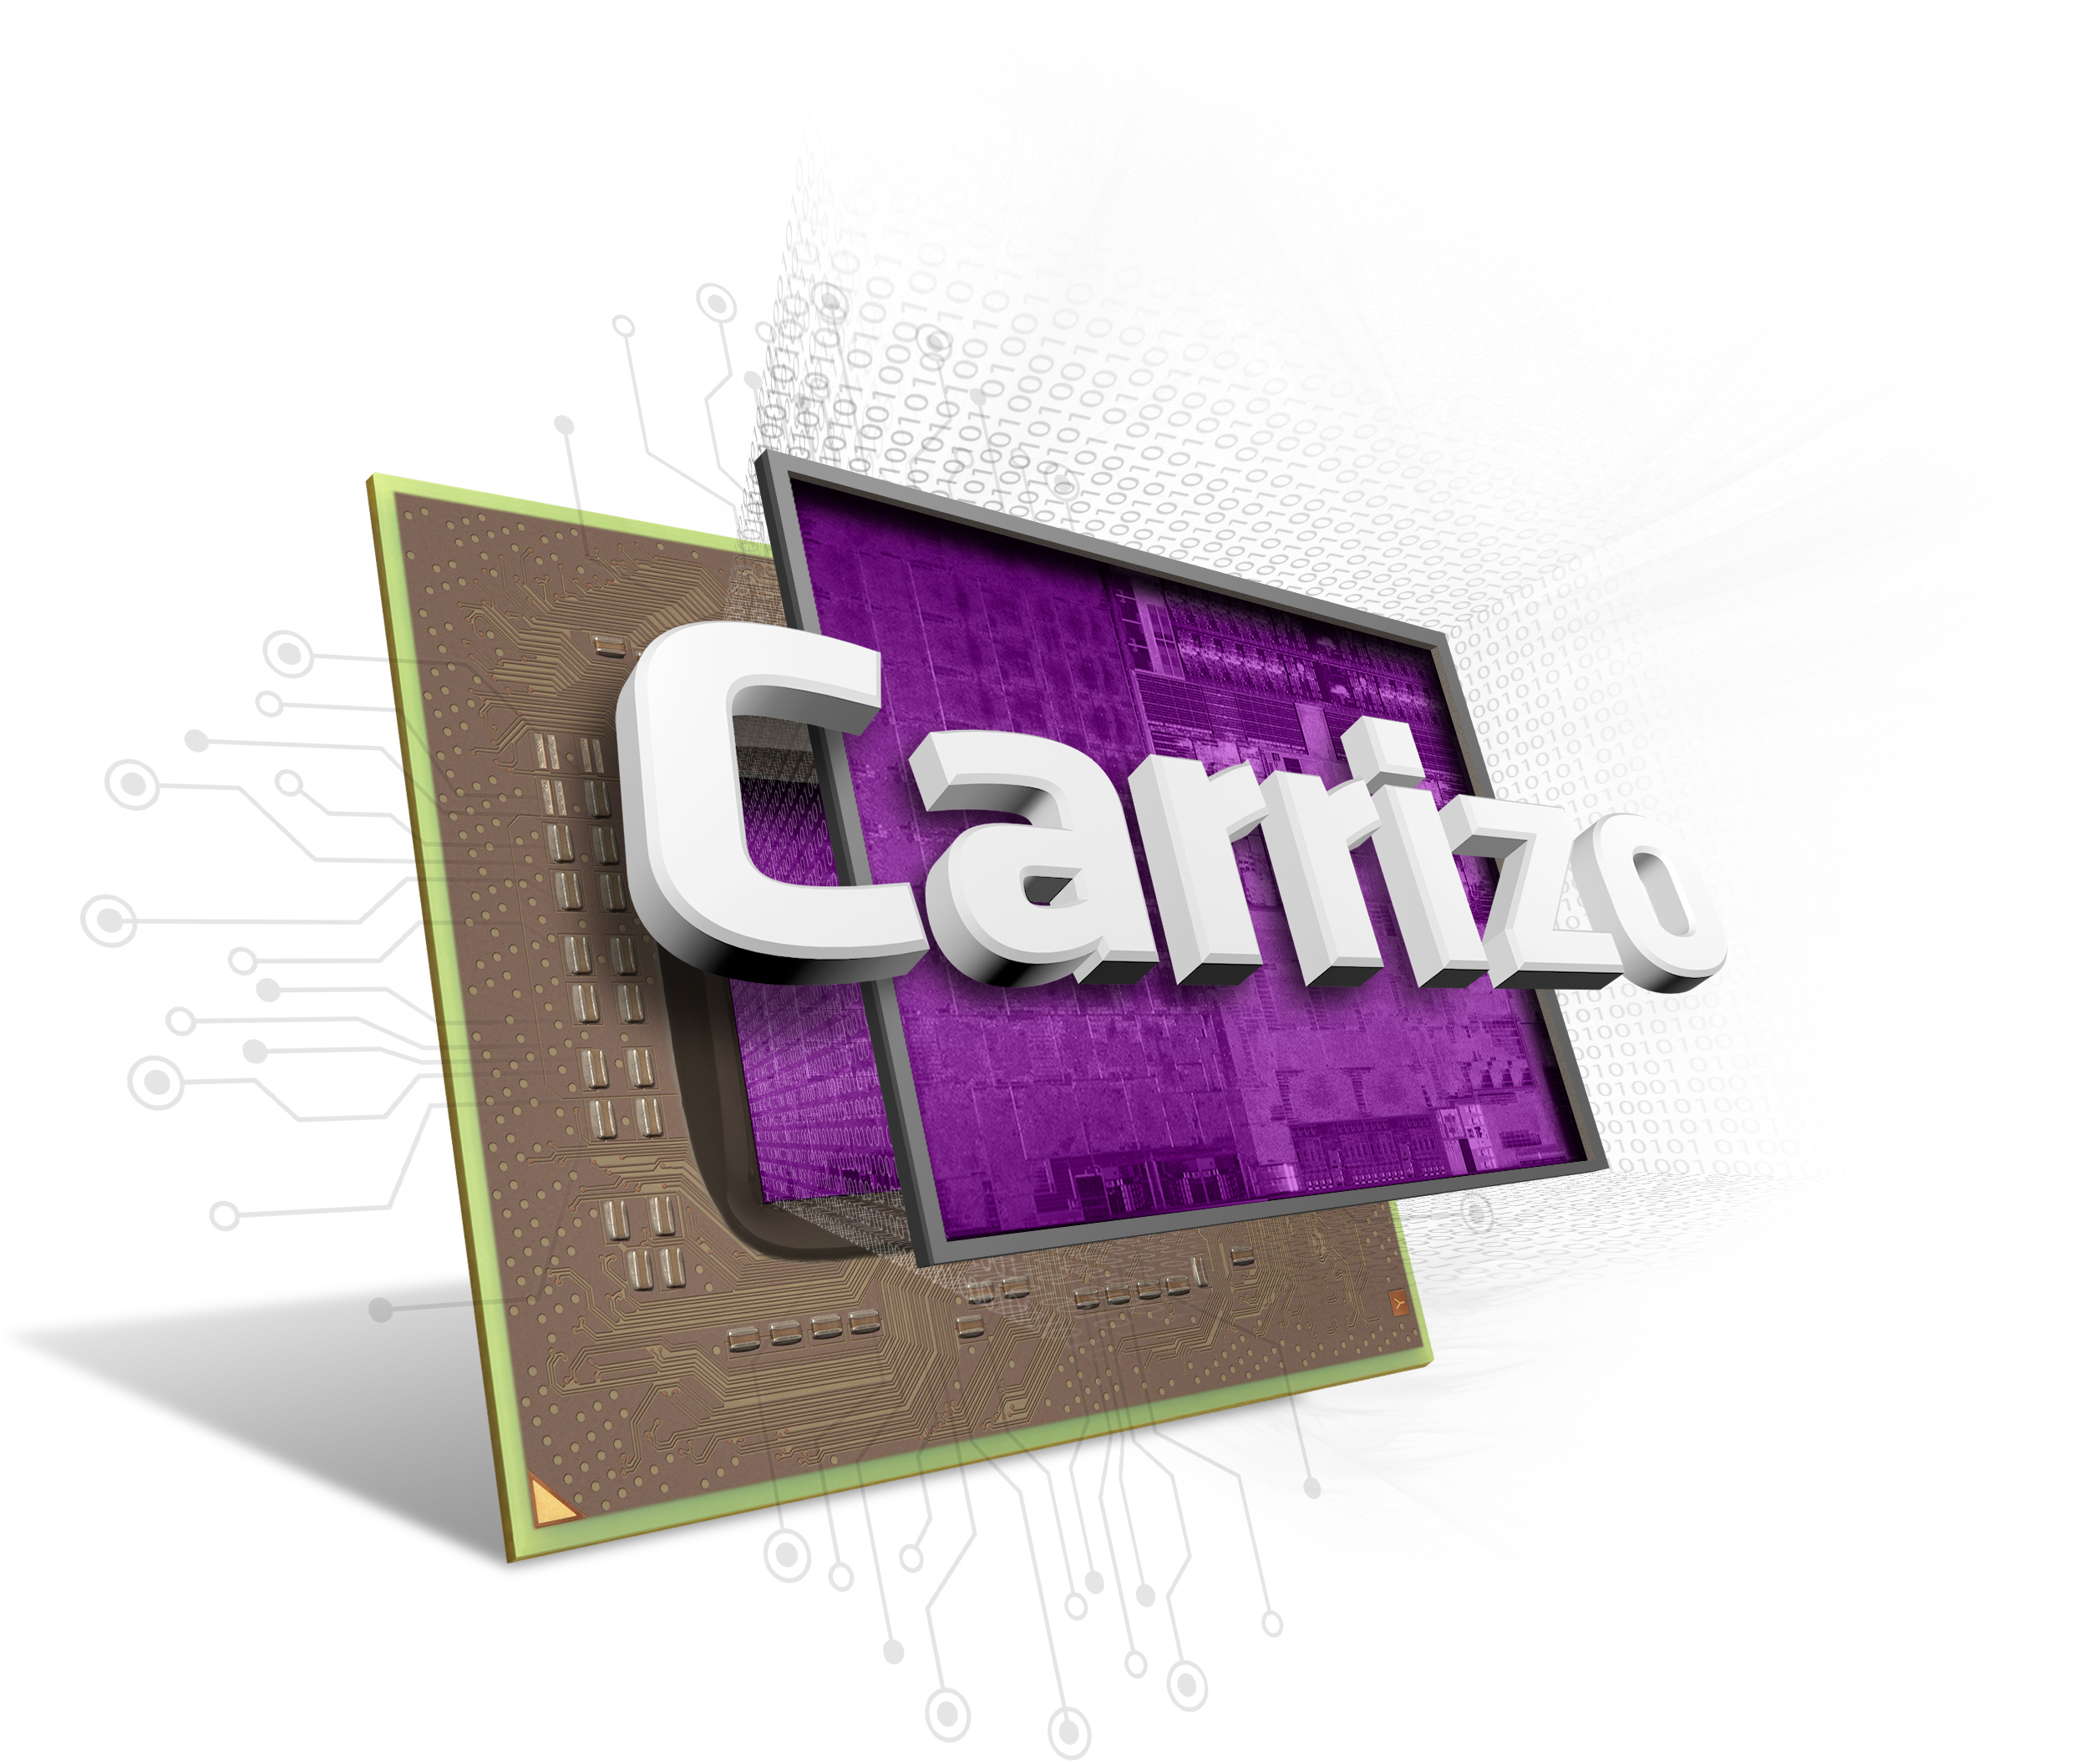 AMD Carizzo APU обещает повышение производительности и эффективности